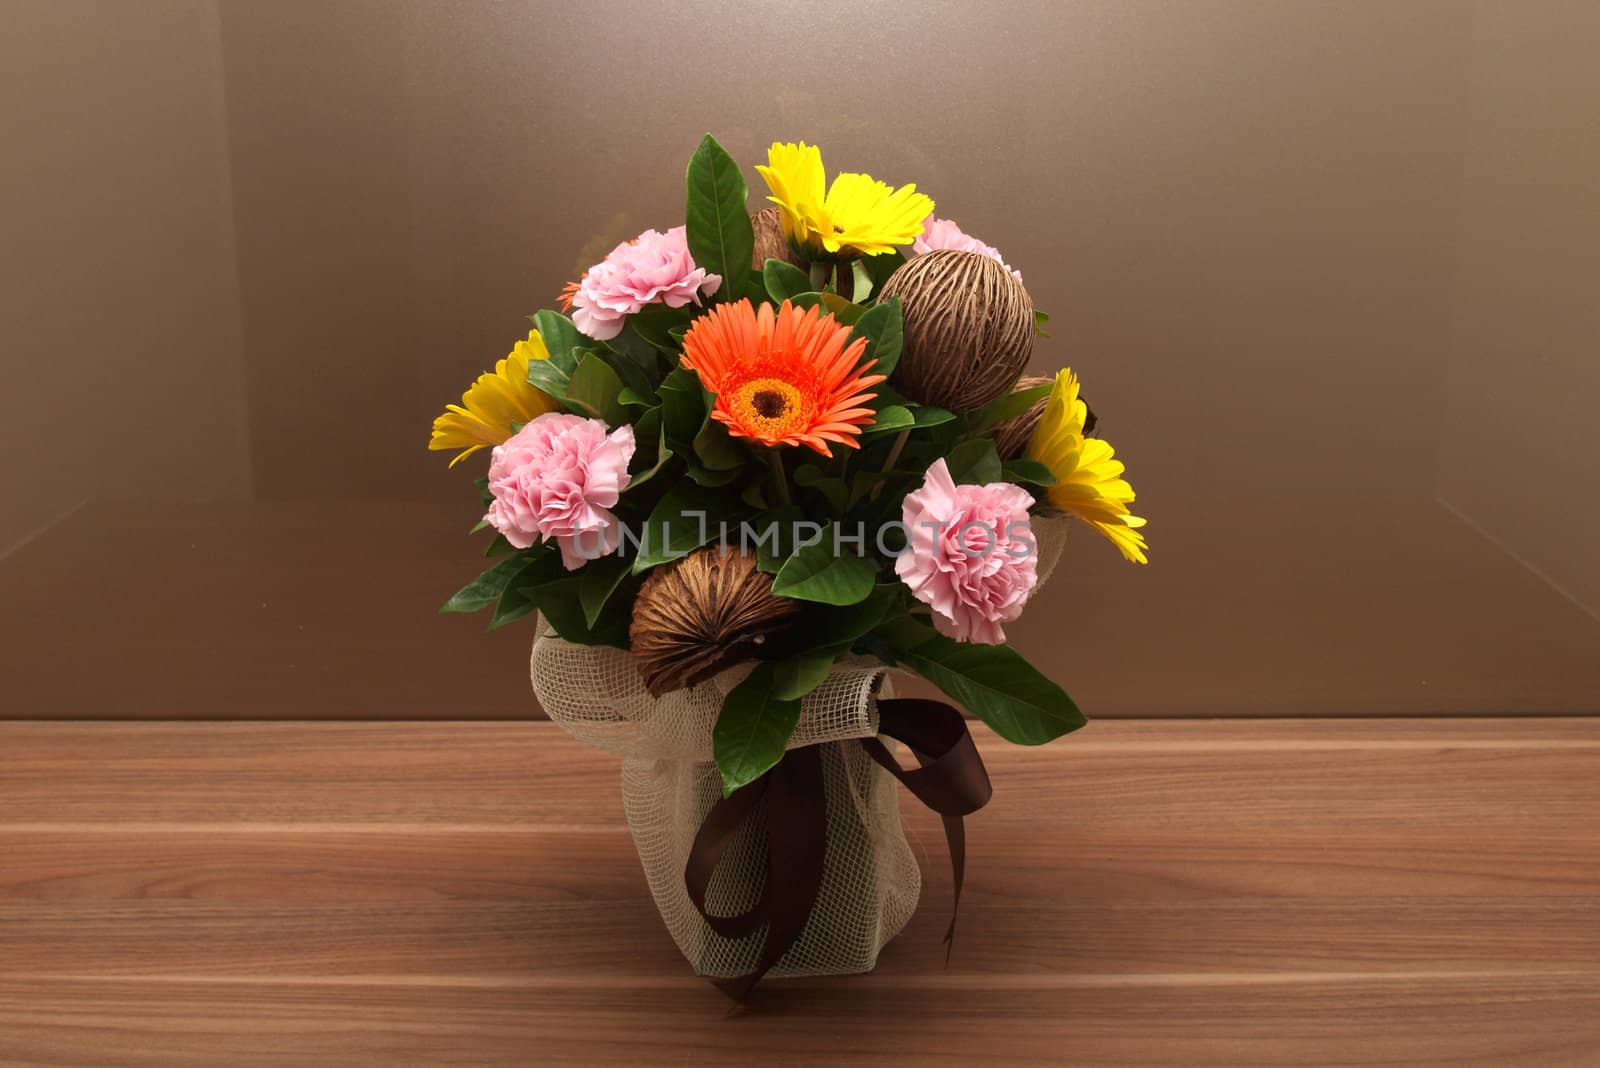 Flowers in vase by jakgree